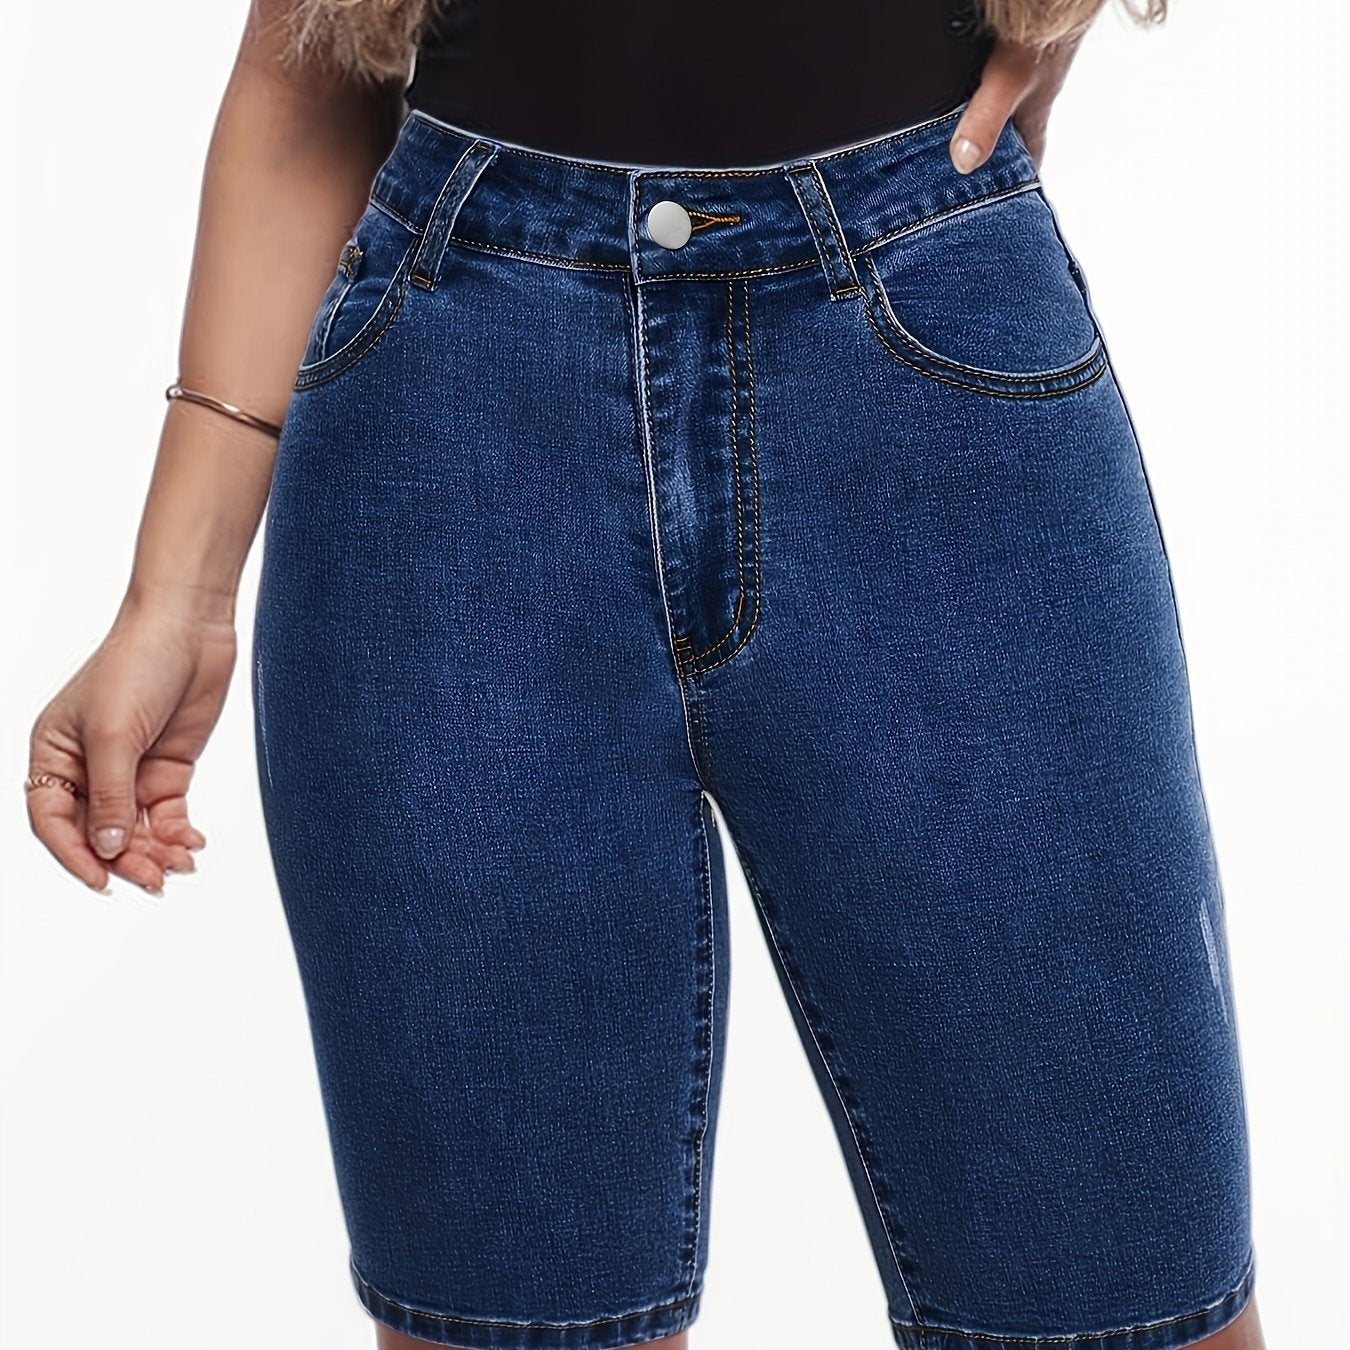 「lovevop」Dark Blue High Waist Denim Shorts, Slim Fit Slash Pockets High Rise Short Denim Pants, Women's Denim Jeans & Clothing